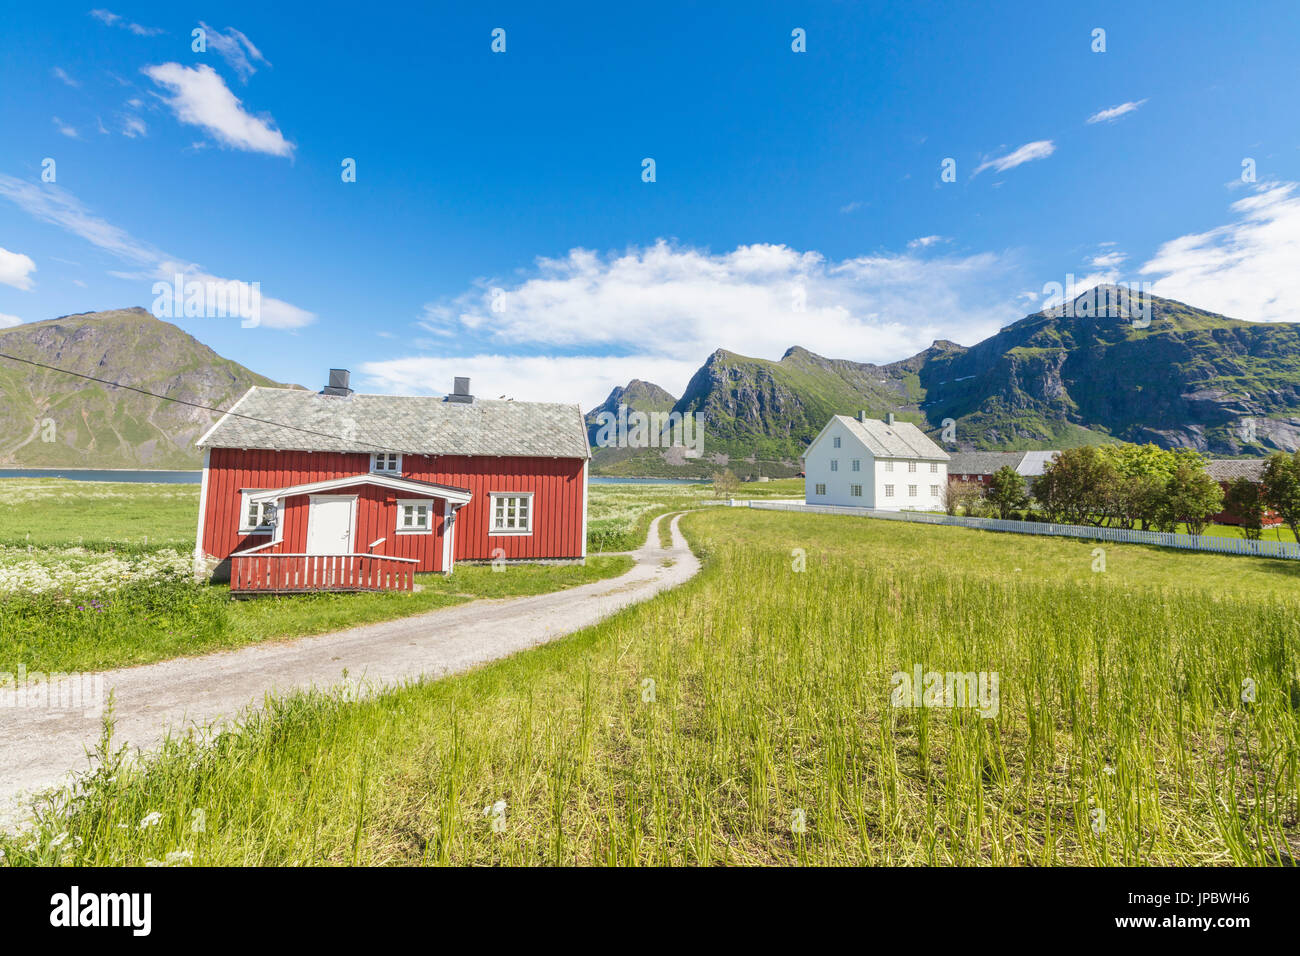 Grünen Rasen und Wiesen umrahmen die typischen Häuser genannt Fischerorten in die Fischerei Dorf Flakstad Lofoten Inseln Norwegen Europas Stockfoto